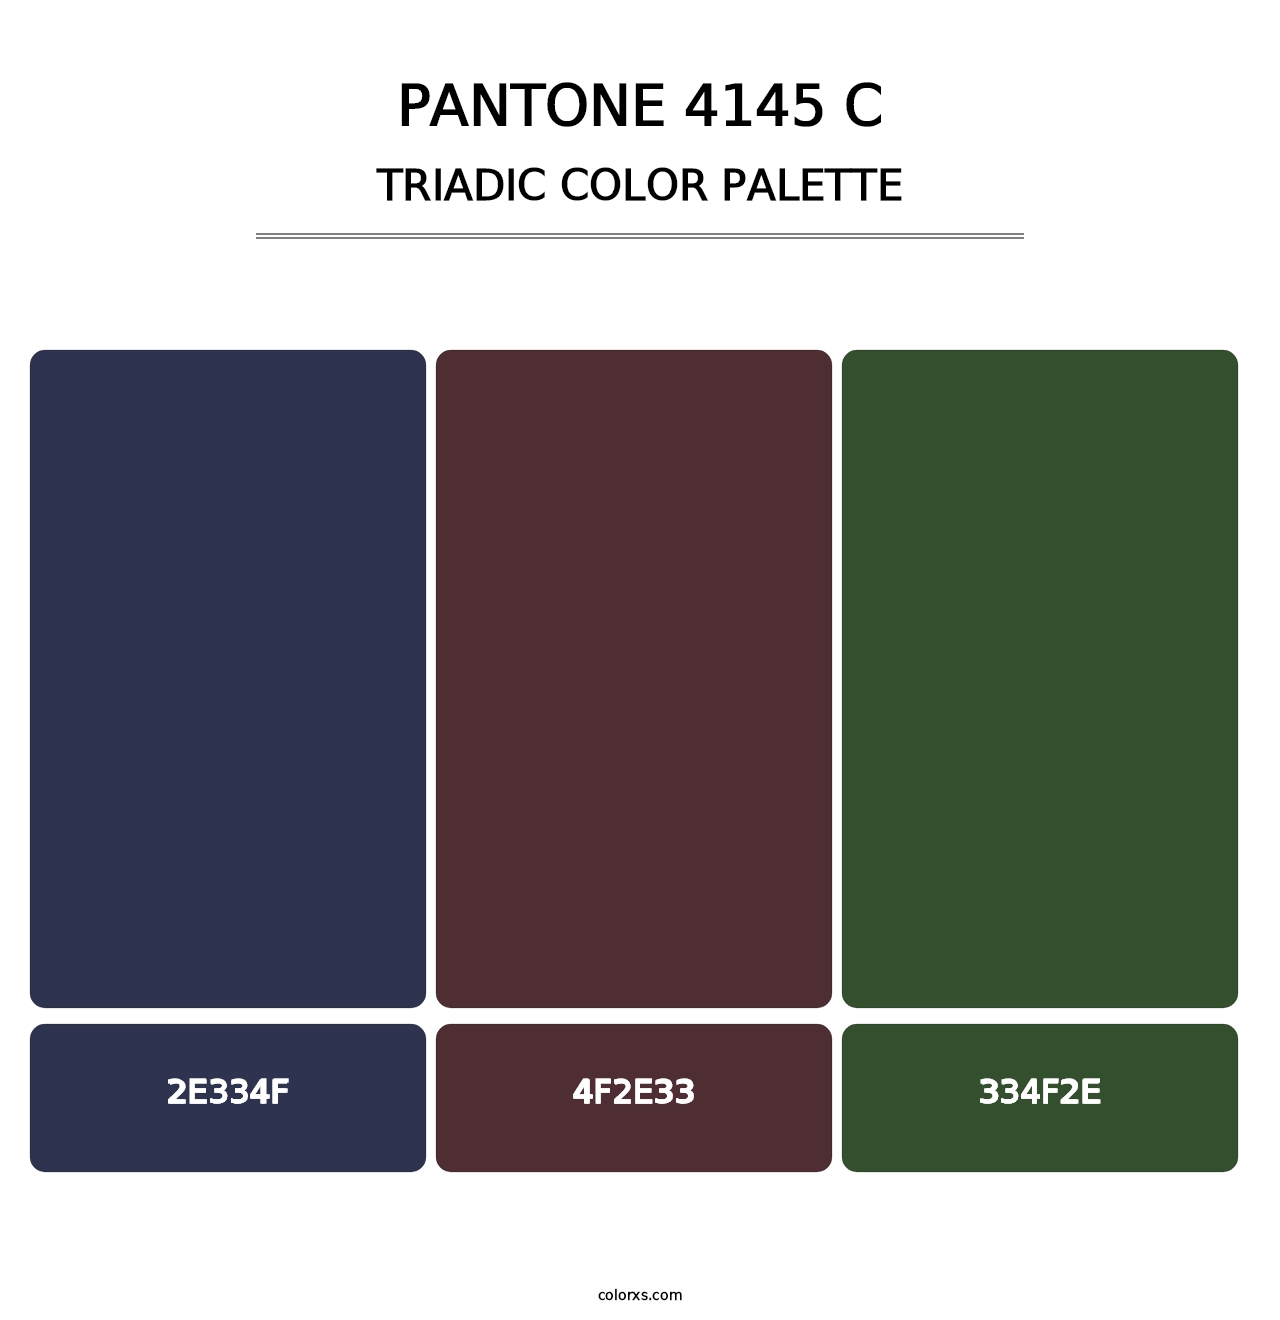 PANTONE 4145 C - Triadic Color Palette